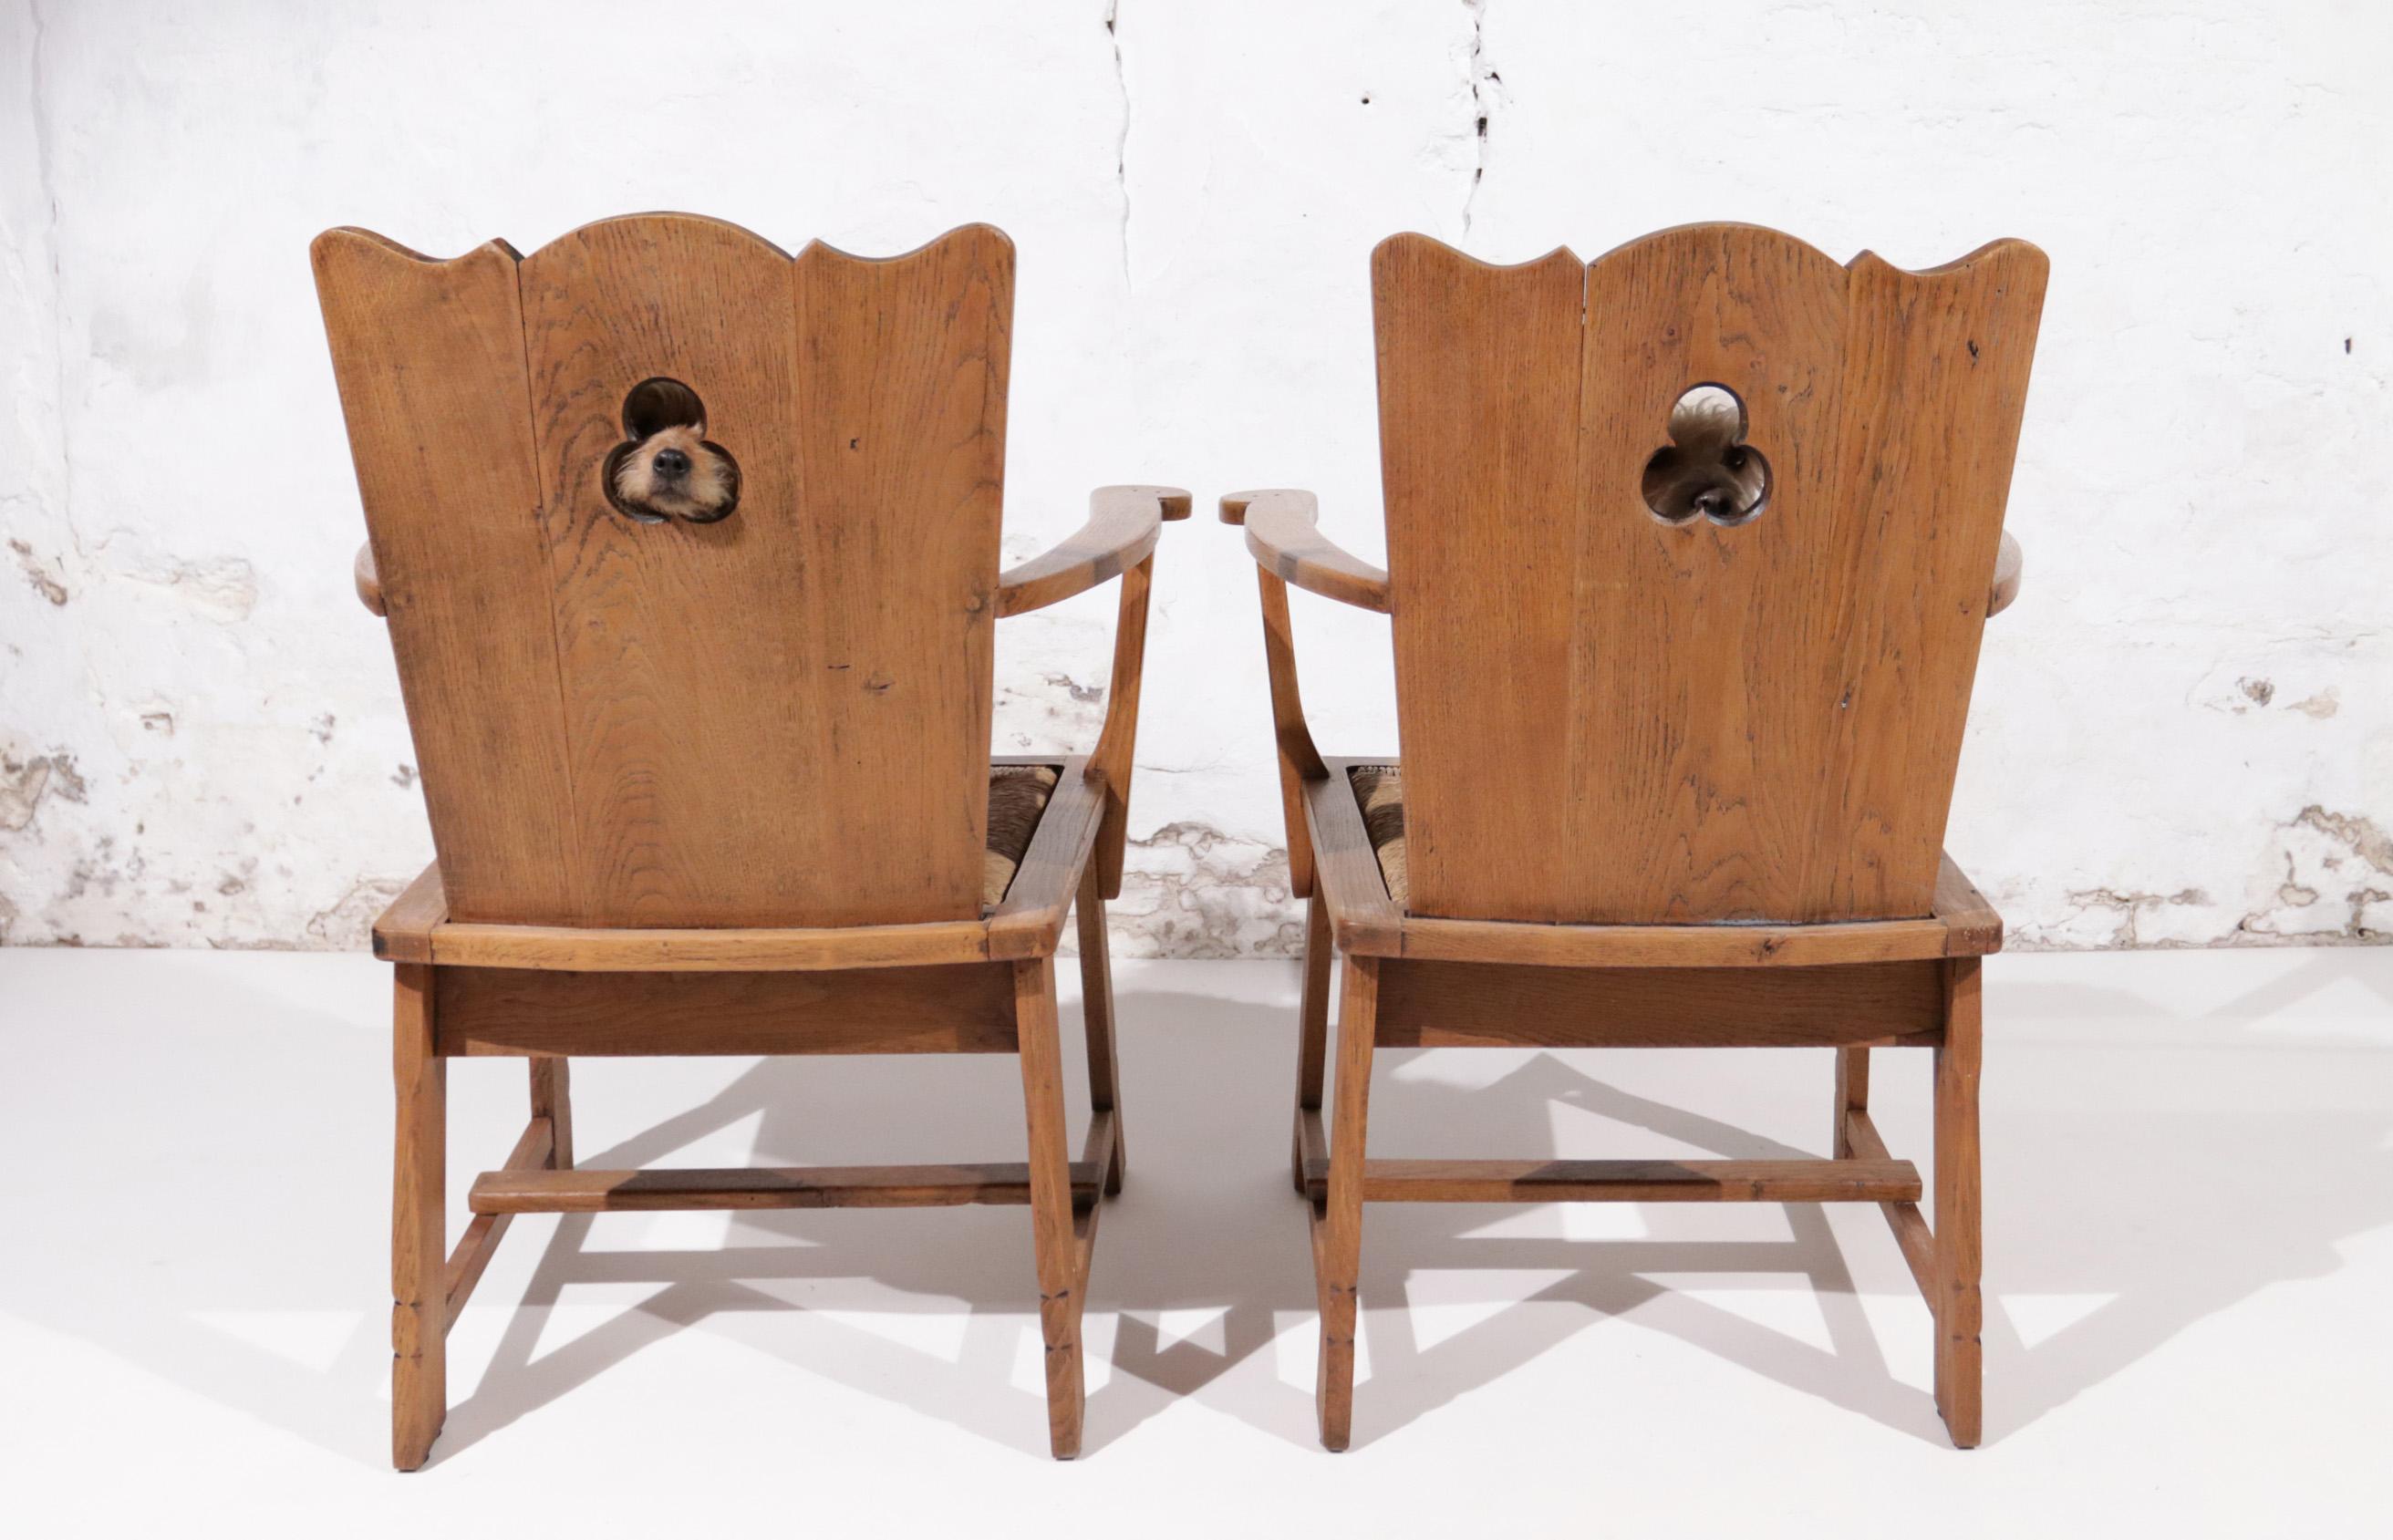 Deux belles chaises en chêne massif avec un siège en jonc des années 30.
S'adapte parfaitement au style de designers tels que Axel Einar Hjorth, Charlotte Perriand, Jean Touret et Charles Dudouyt.
Les chaises sont confortables et l'utilisation de